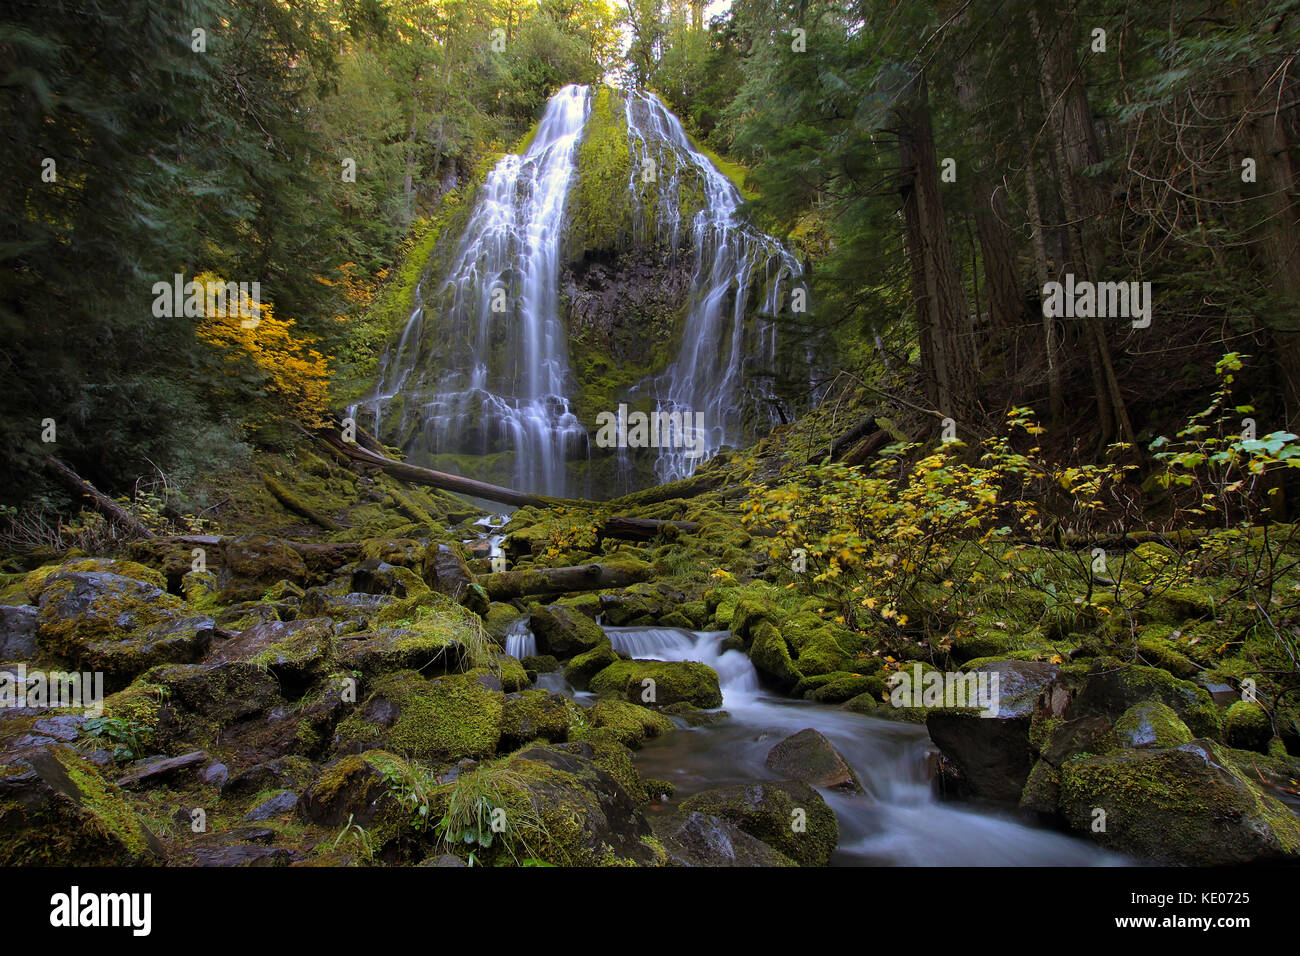 Proxy Falls near Blue River in Oregon Stock Photo